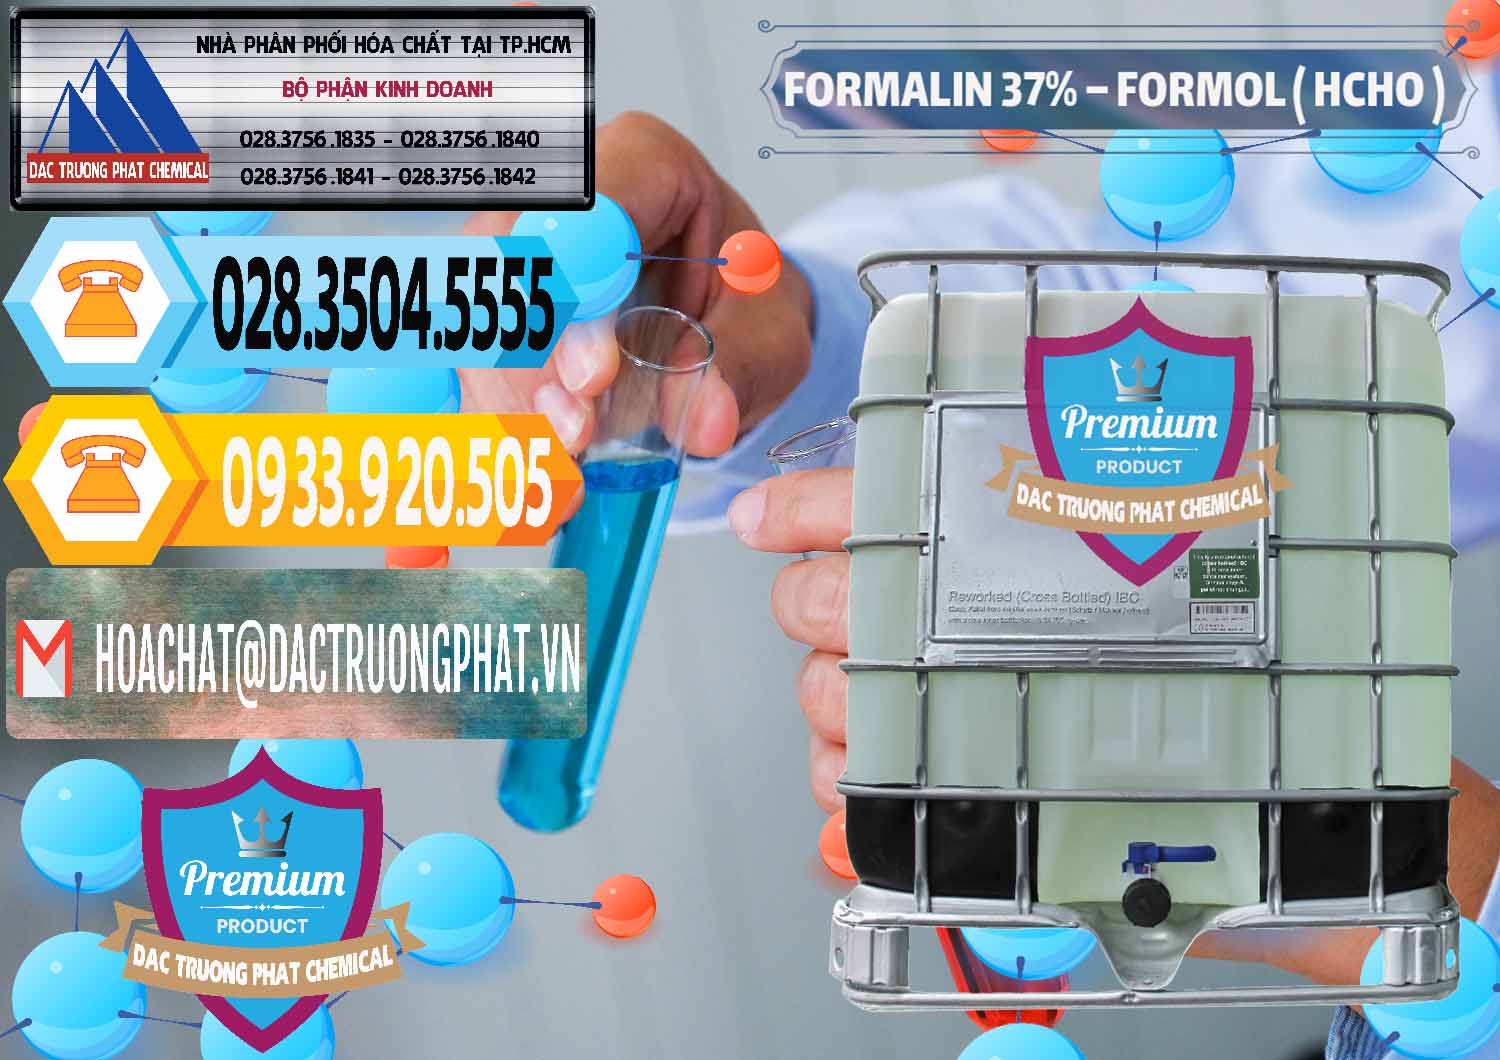 Nơi chuyên kinh doanh & phân phối Formalin - Formol ( HCHO ) 37% Việt Nam - 0187 - Cty chuyên kinh doanh ( bán ) hóa chất tại TP.HCM - hoachattayrua.net